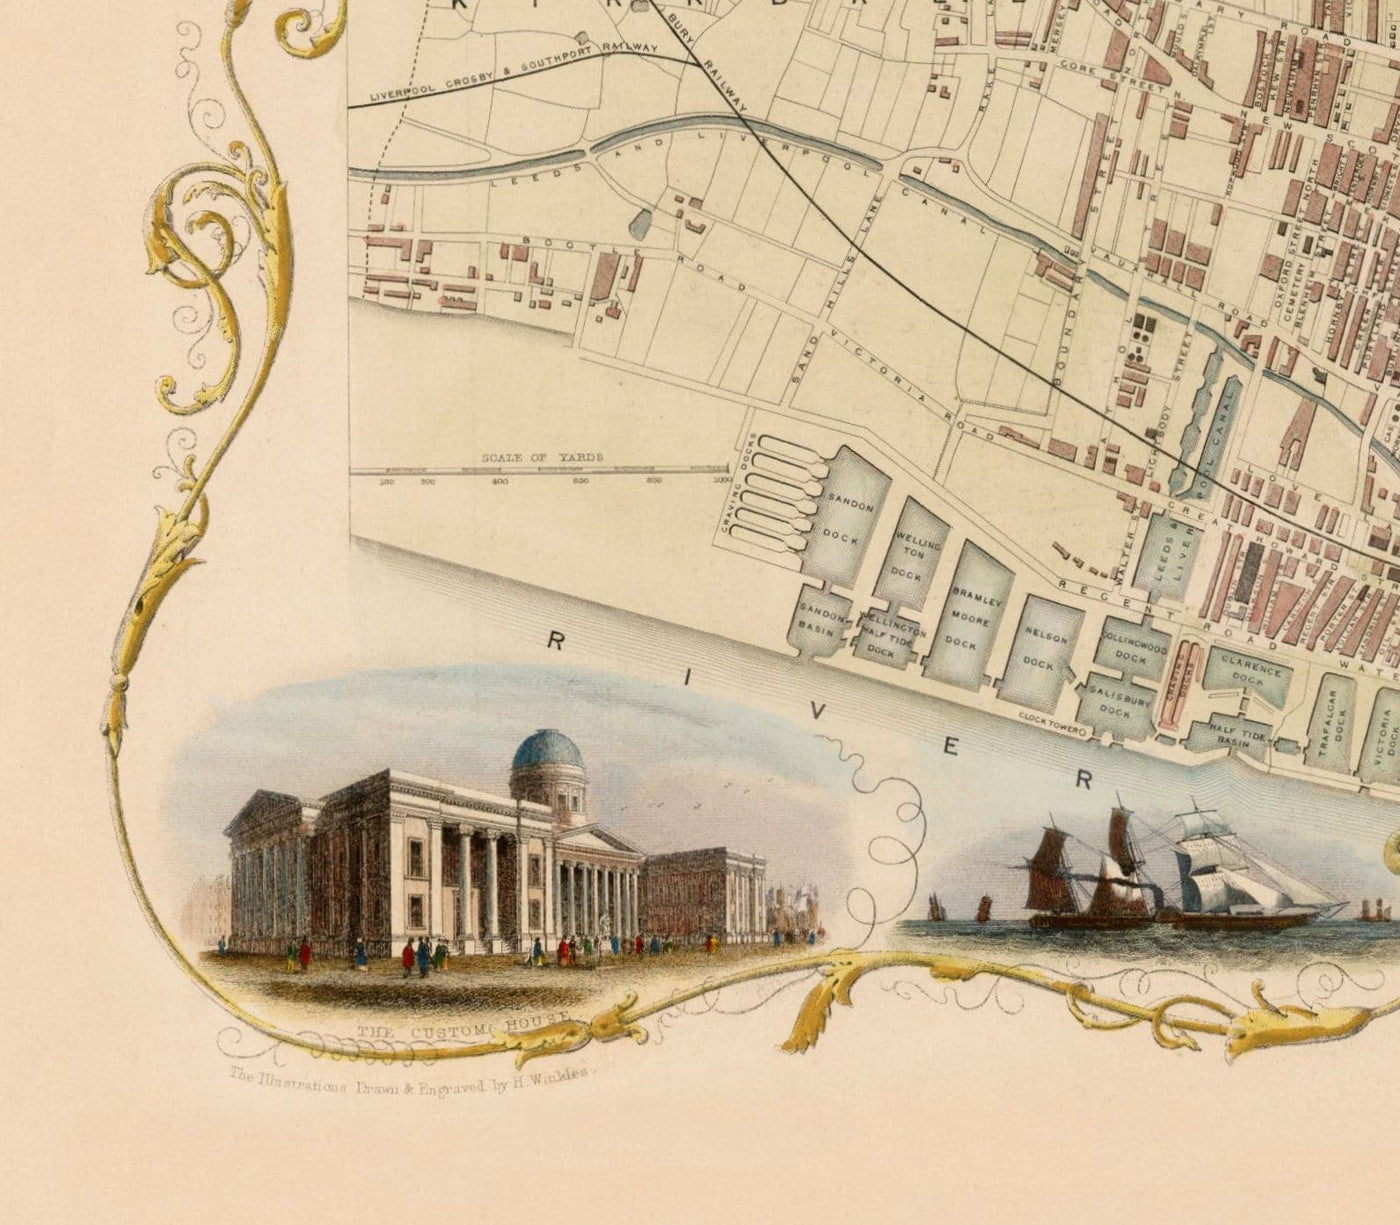 Alte Farbkarte von Liverpool von Tallis & Rapkin, 1851 - Docks, Mersey, Stadtzentrum